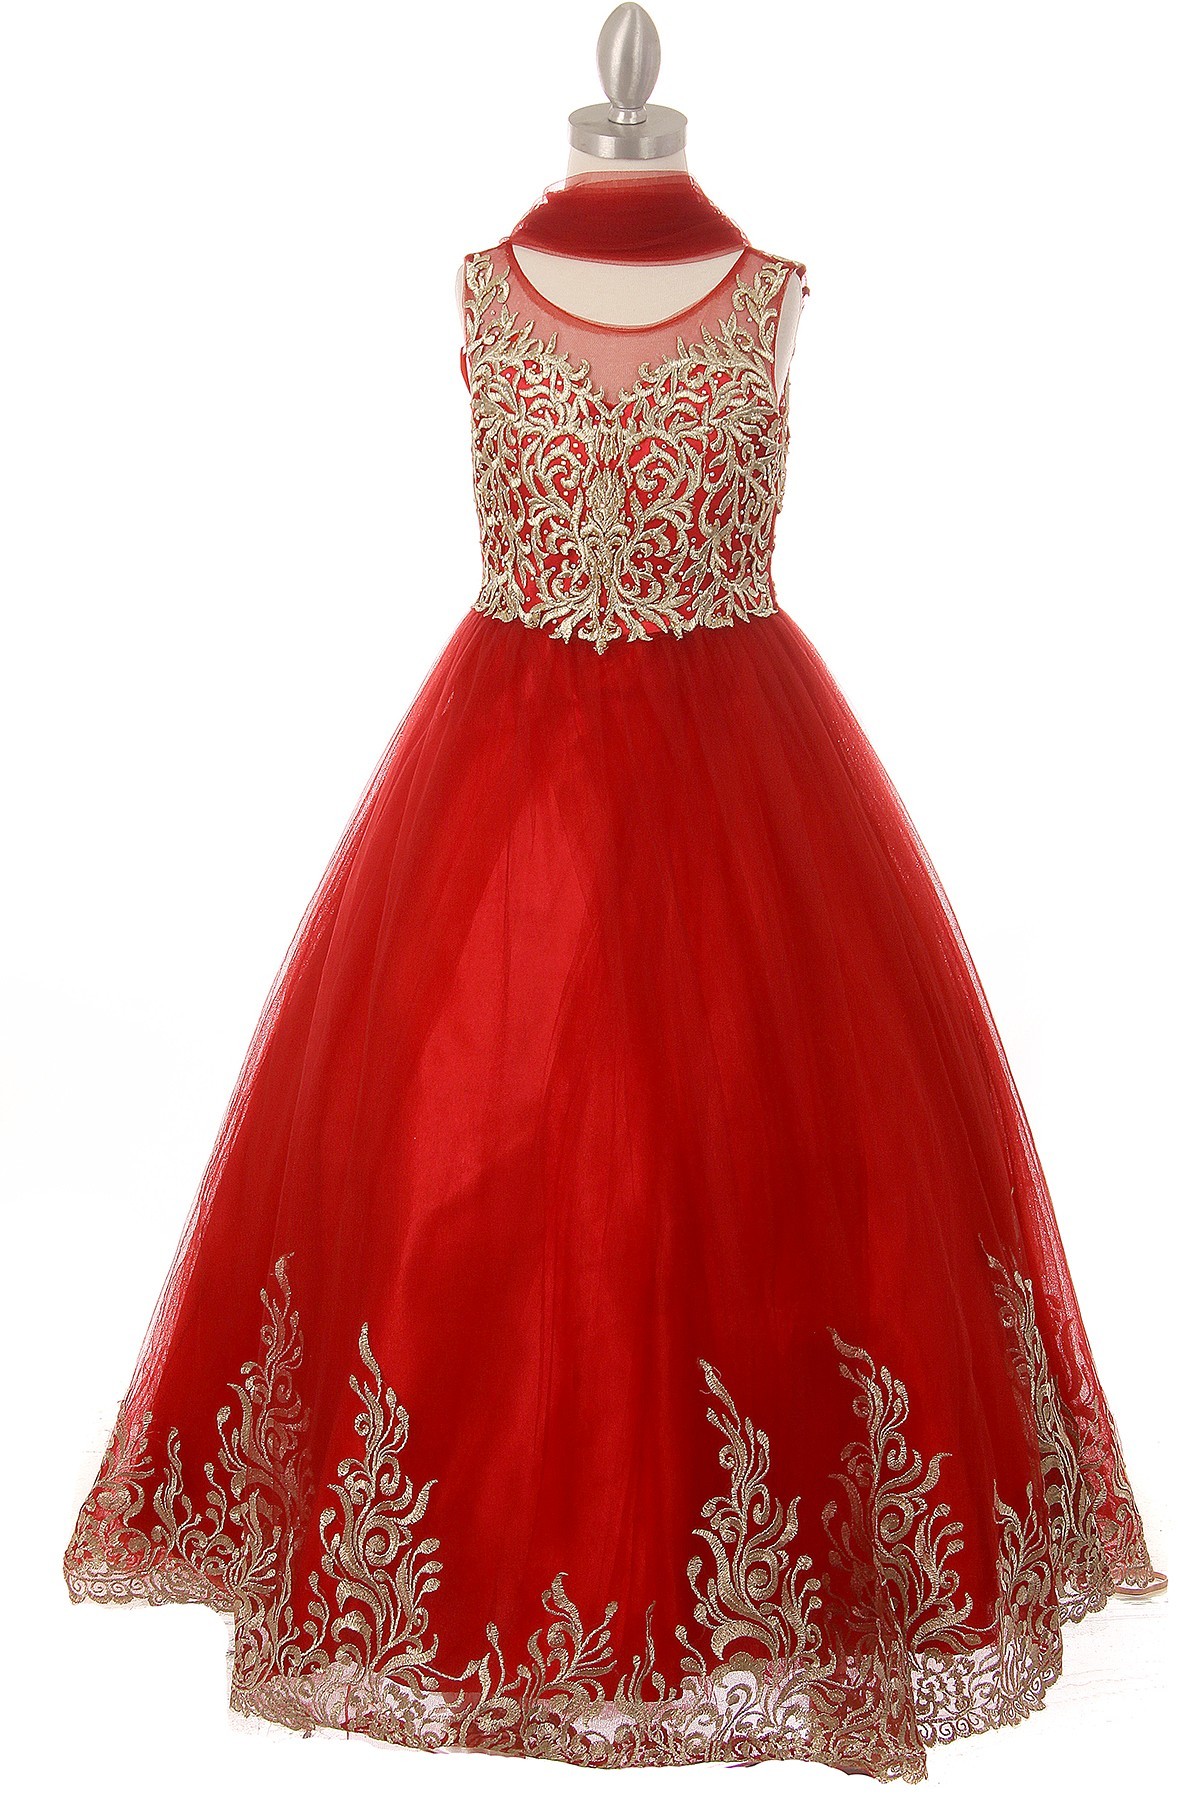 girls formal red dress